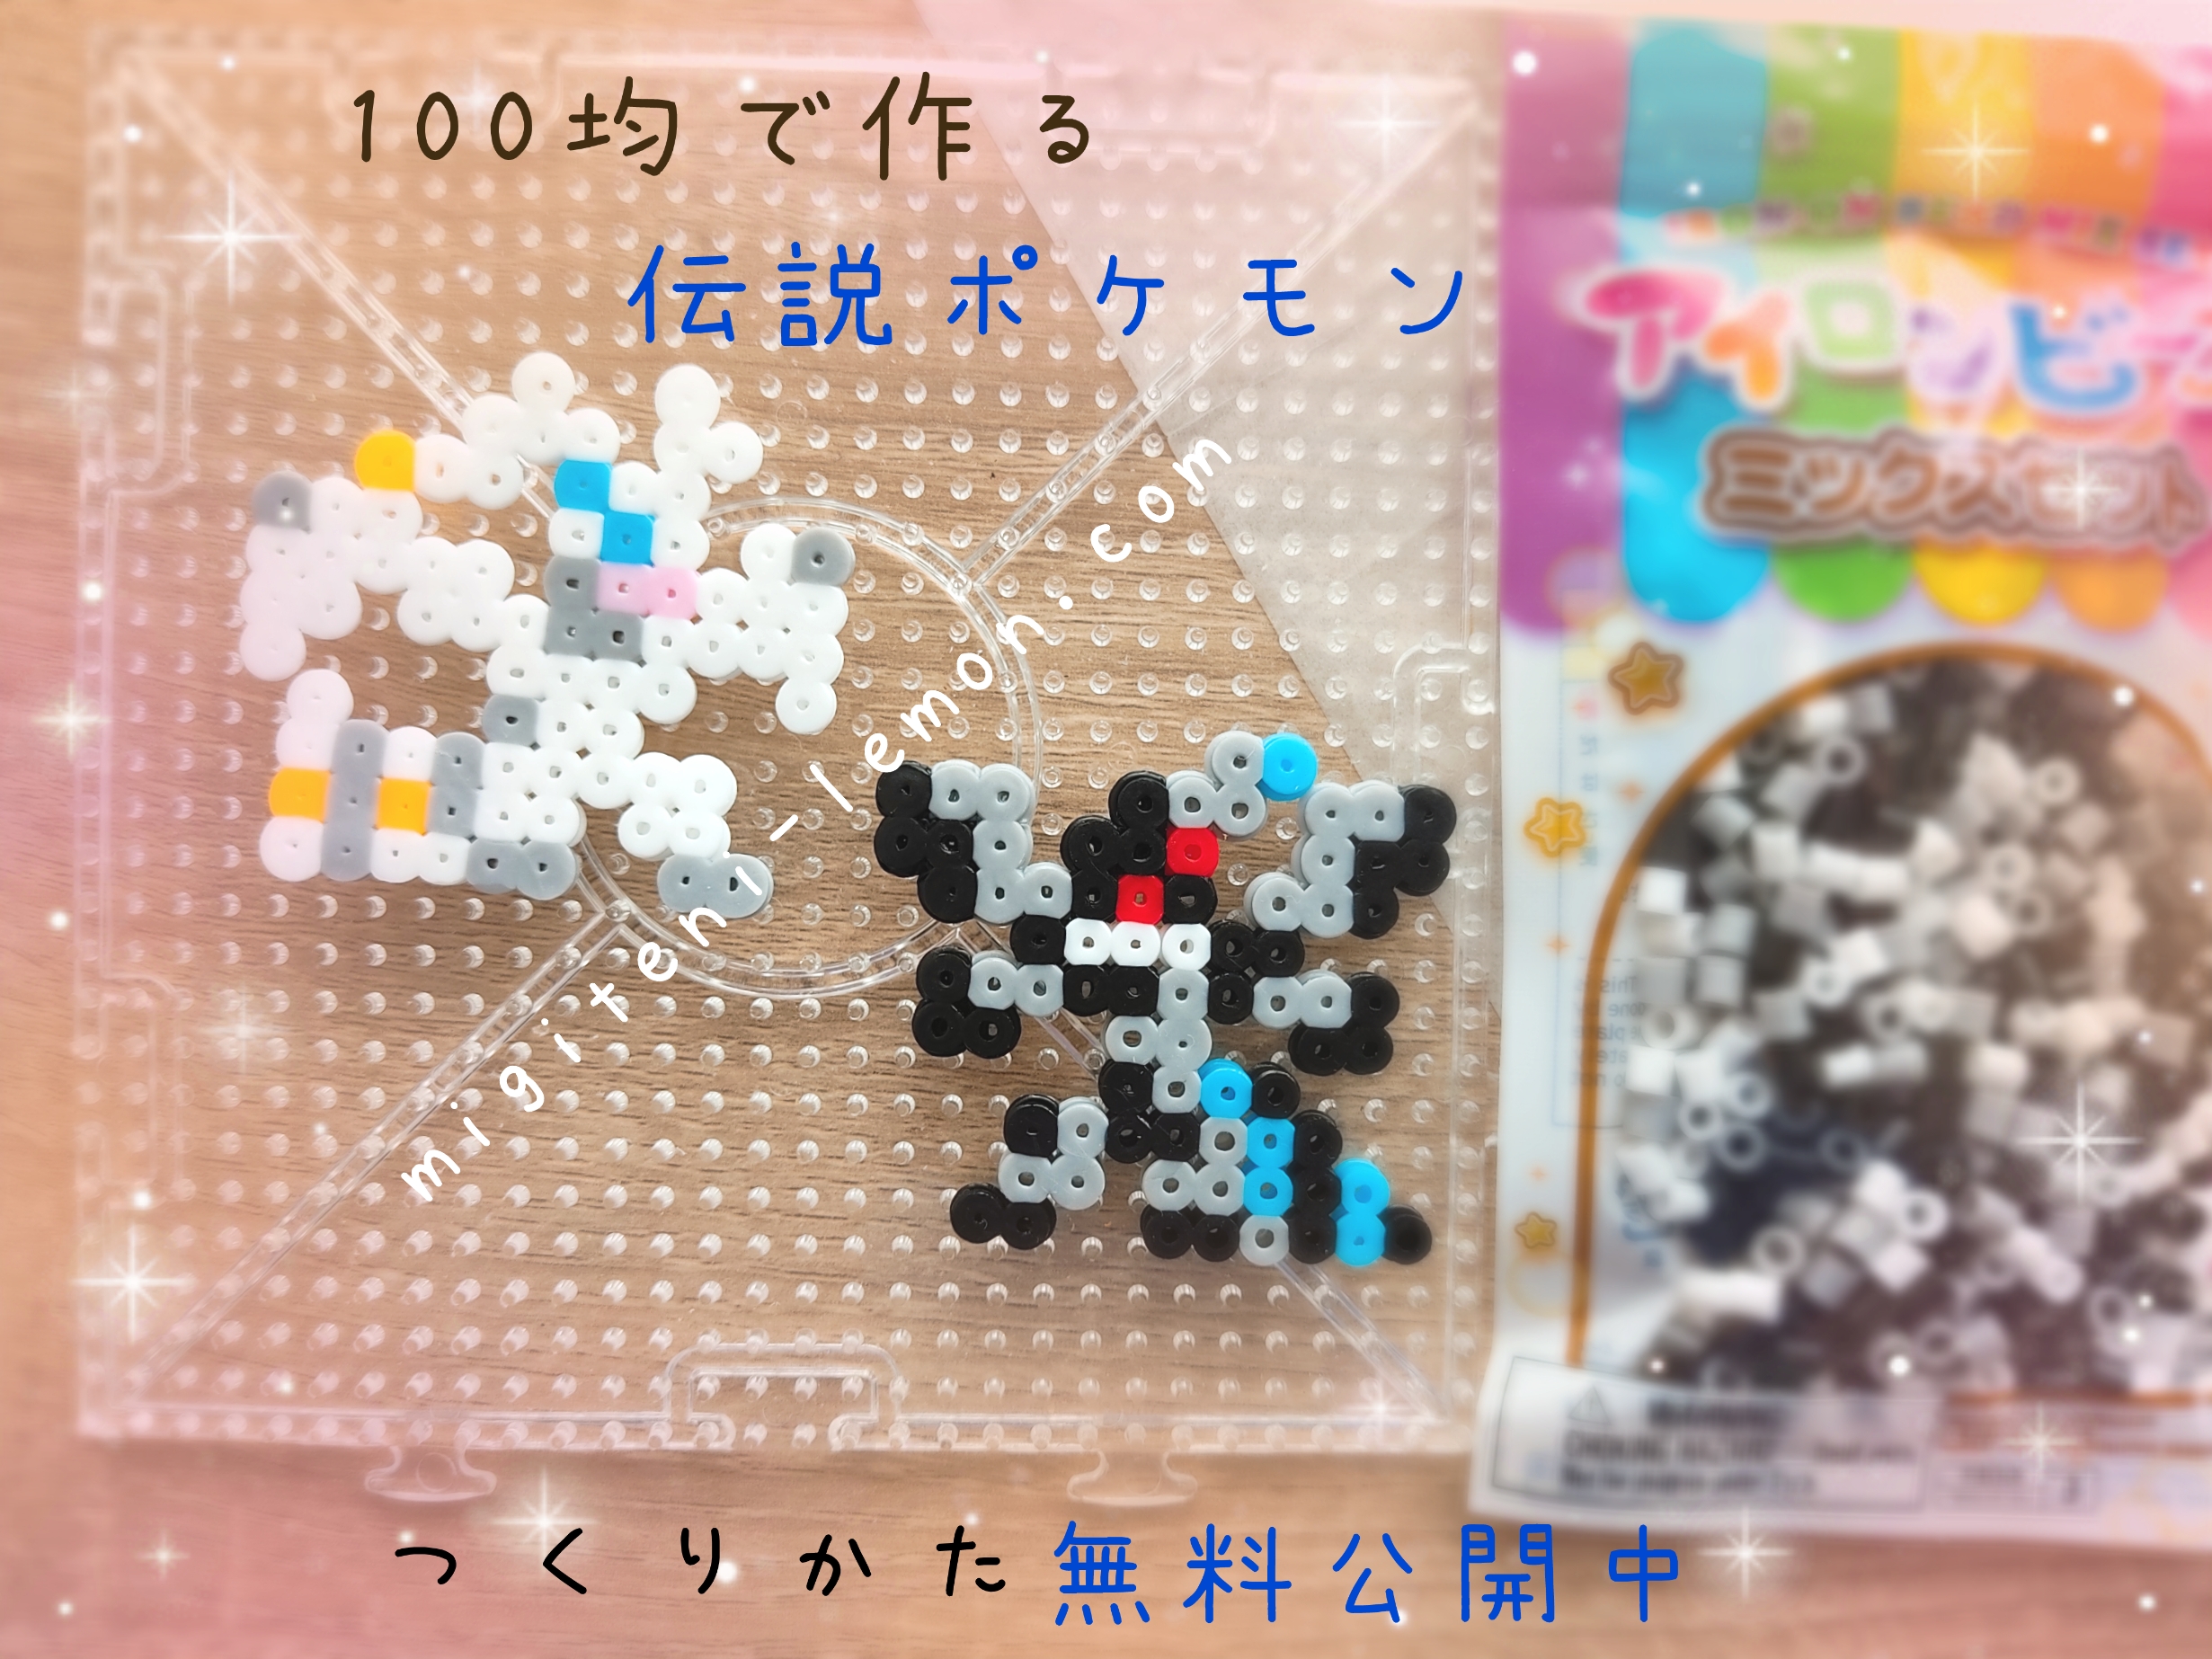 reshiram-zekrom-legend-pokemon-beads-zuan